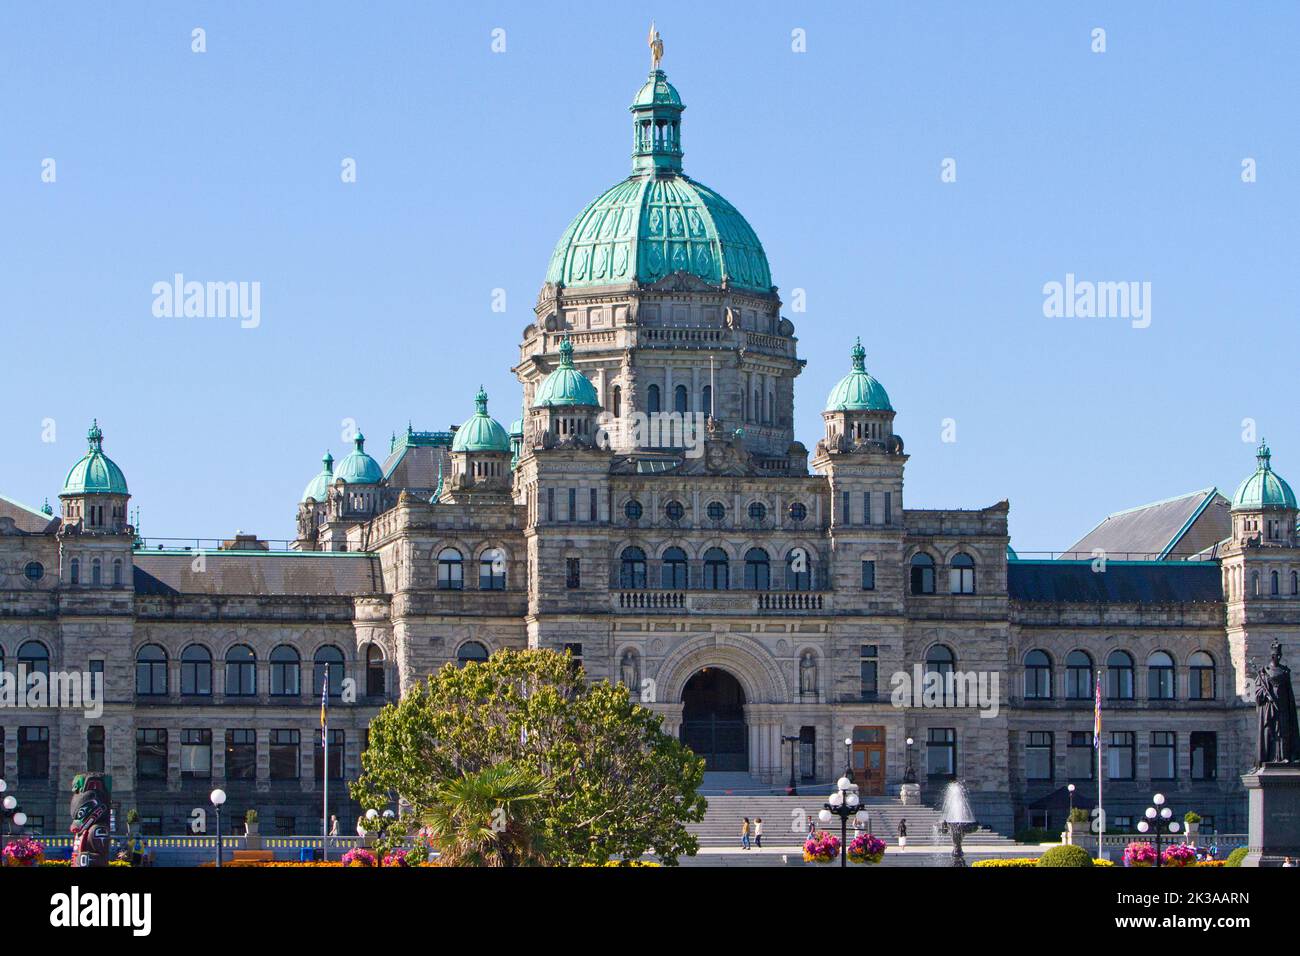 Una vista panoramica degli edifici del Parlamento della British Columbia a Victoria, British Columbia, Canada, sede dell'Assemblea legislativa della British Columbia Foto Stock